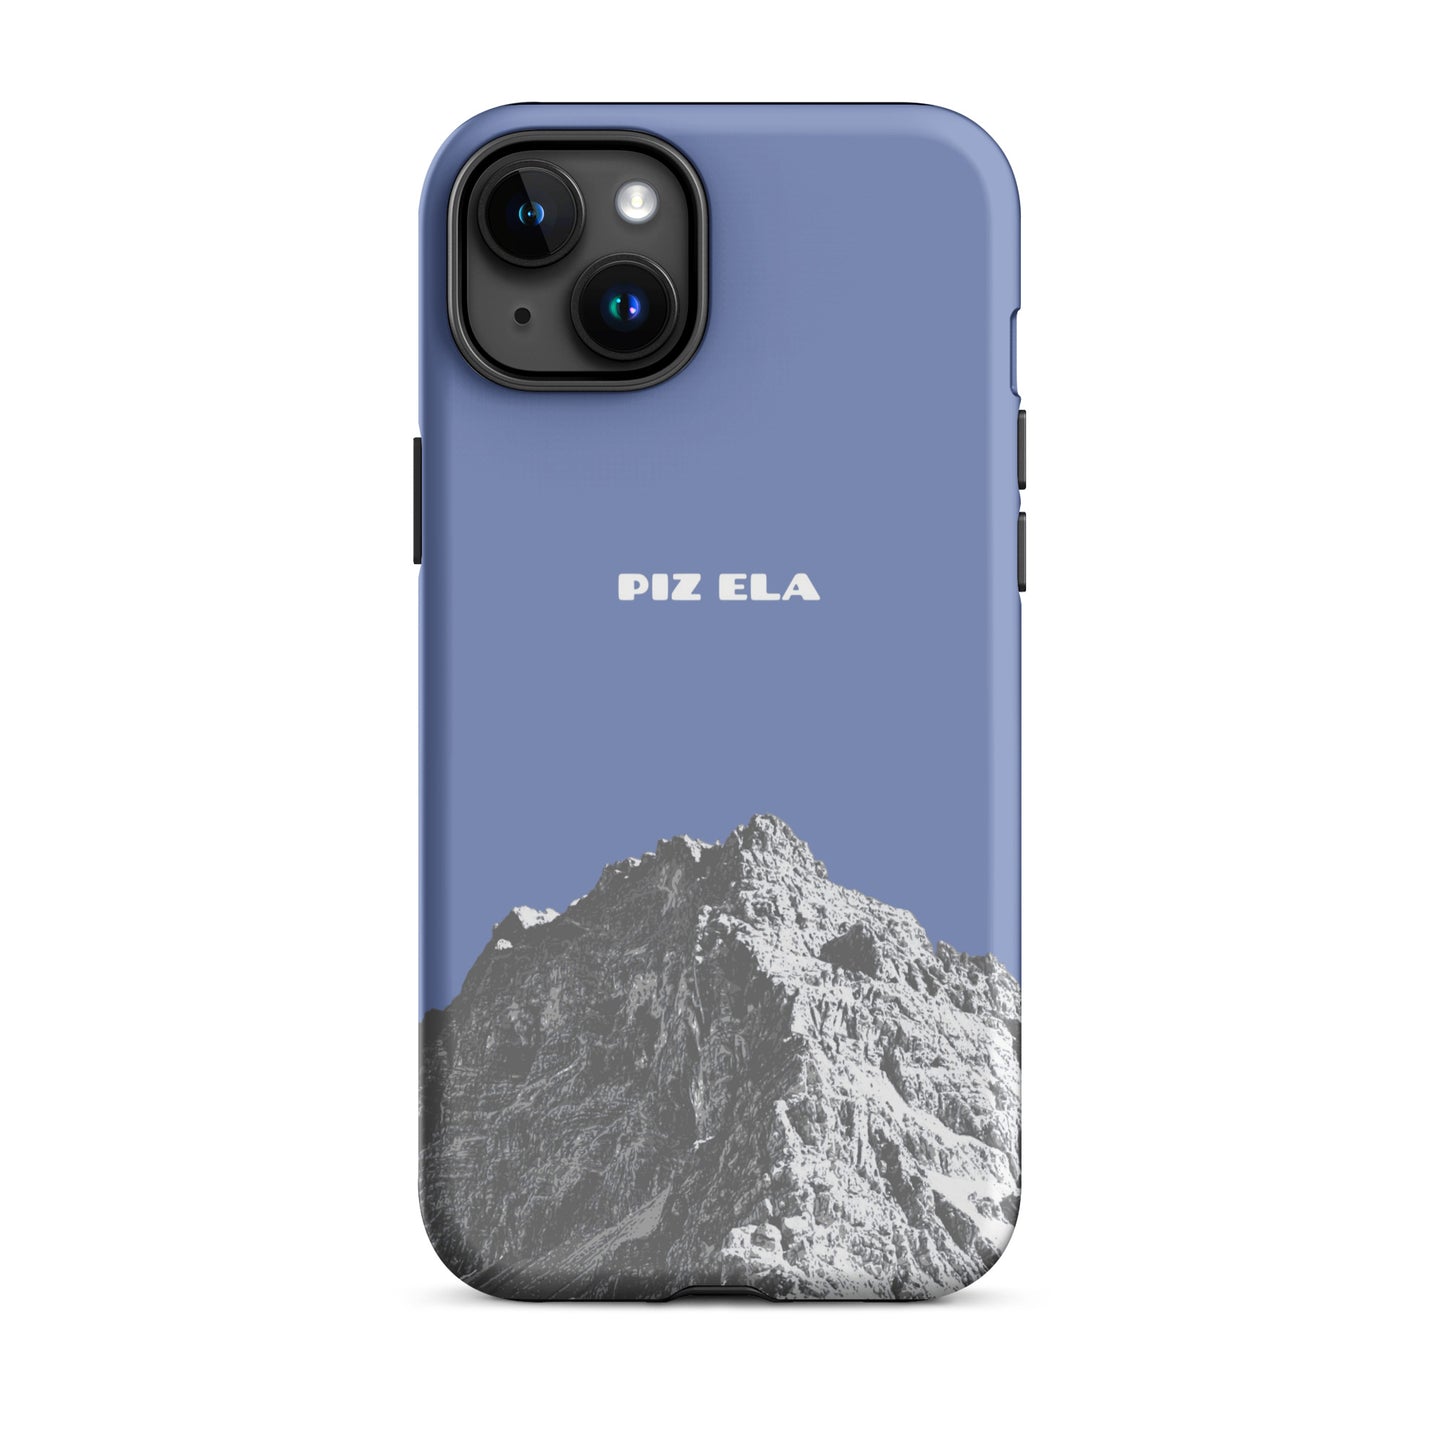 iPhone Case - Piz Ela - Pastellblau